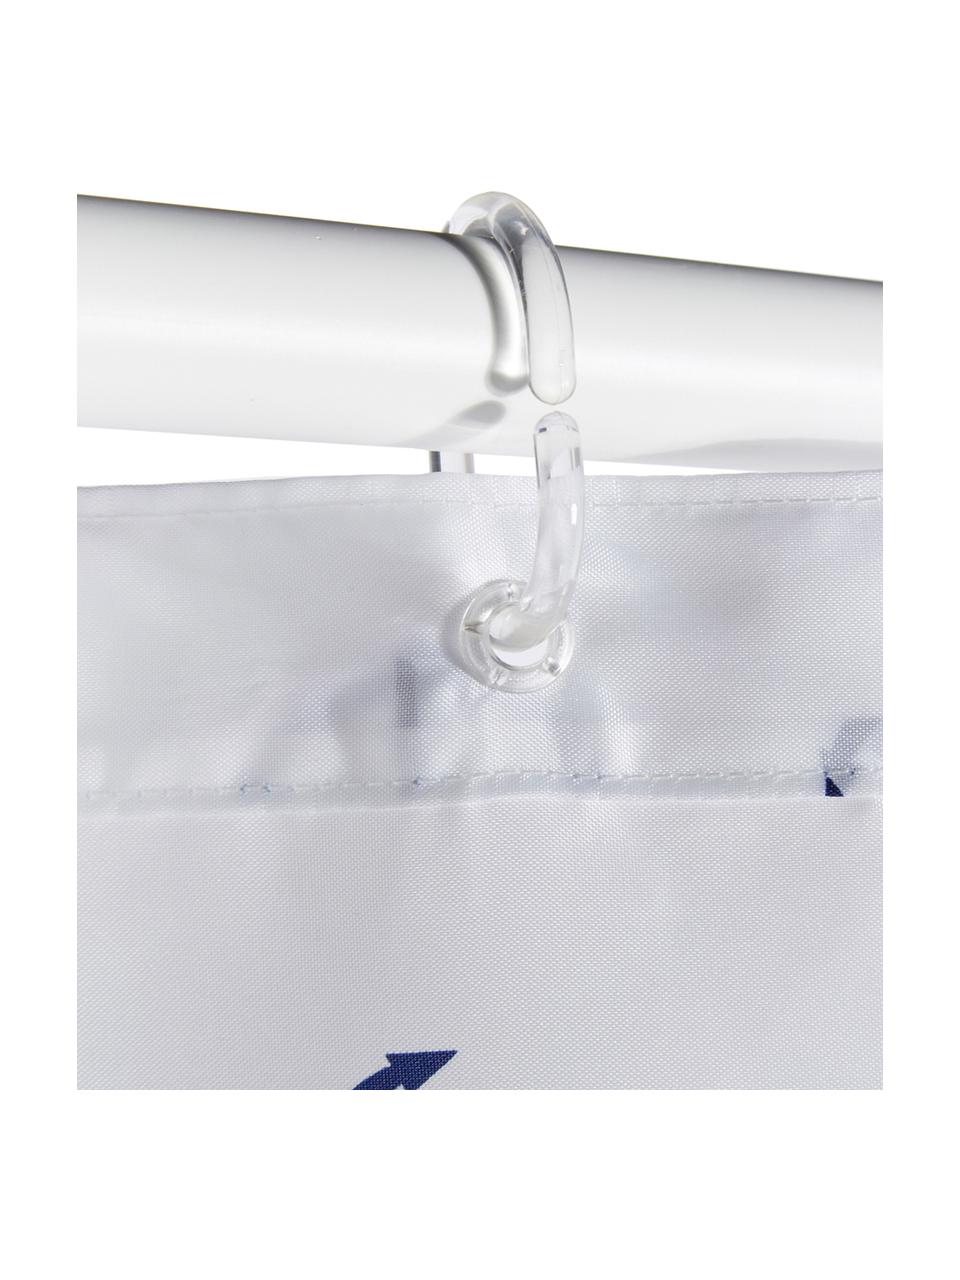 Duschvorhang Anchor mit Anker-Print, 100% Polyester
Wasserabweisend, nicht wasserdicht, Dunkelblau, Weiß, gemustert, B 180 x L 200 cm